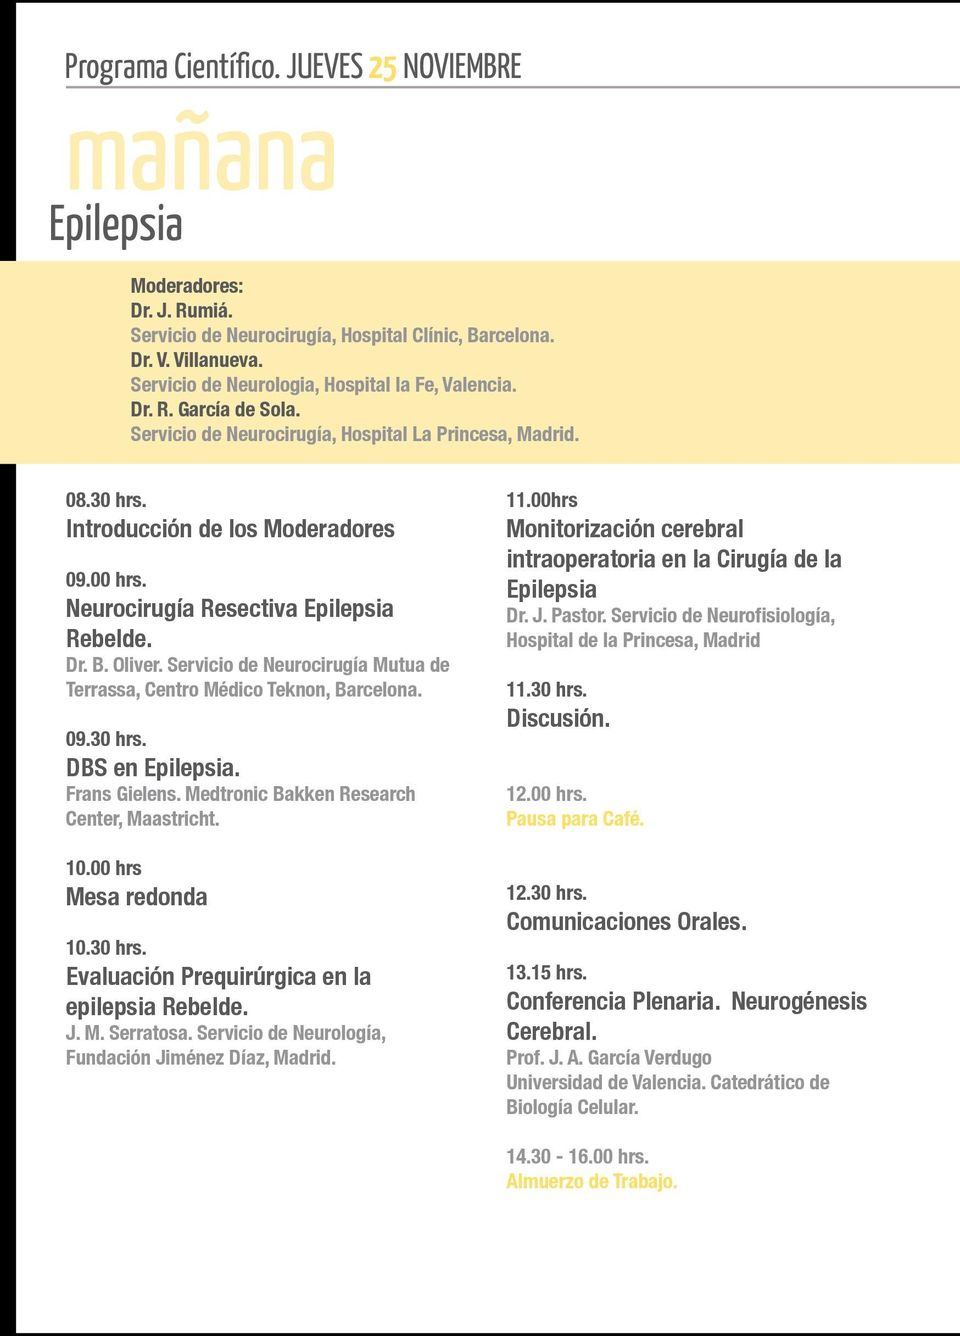 Neurocirugía Resectiva Epilepsia Rebelde. Dr. B. Oliver. Servicio de Neurocirugía Mutua de Terrassa, Centro Médico Teknon, Barcelona. 09.30 hrs. DBS en Epilepsia. Frans Gielens.